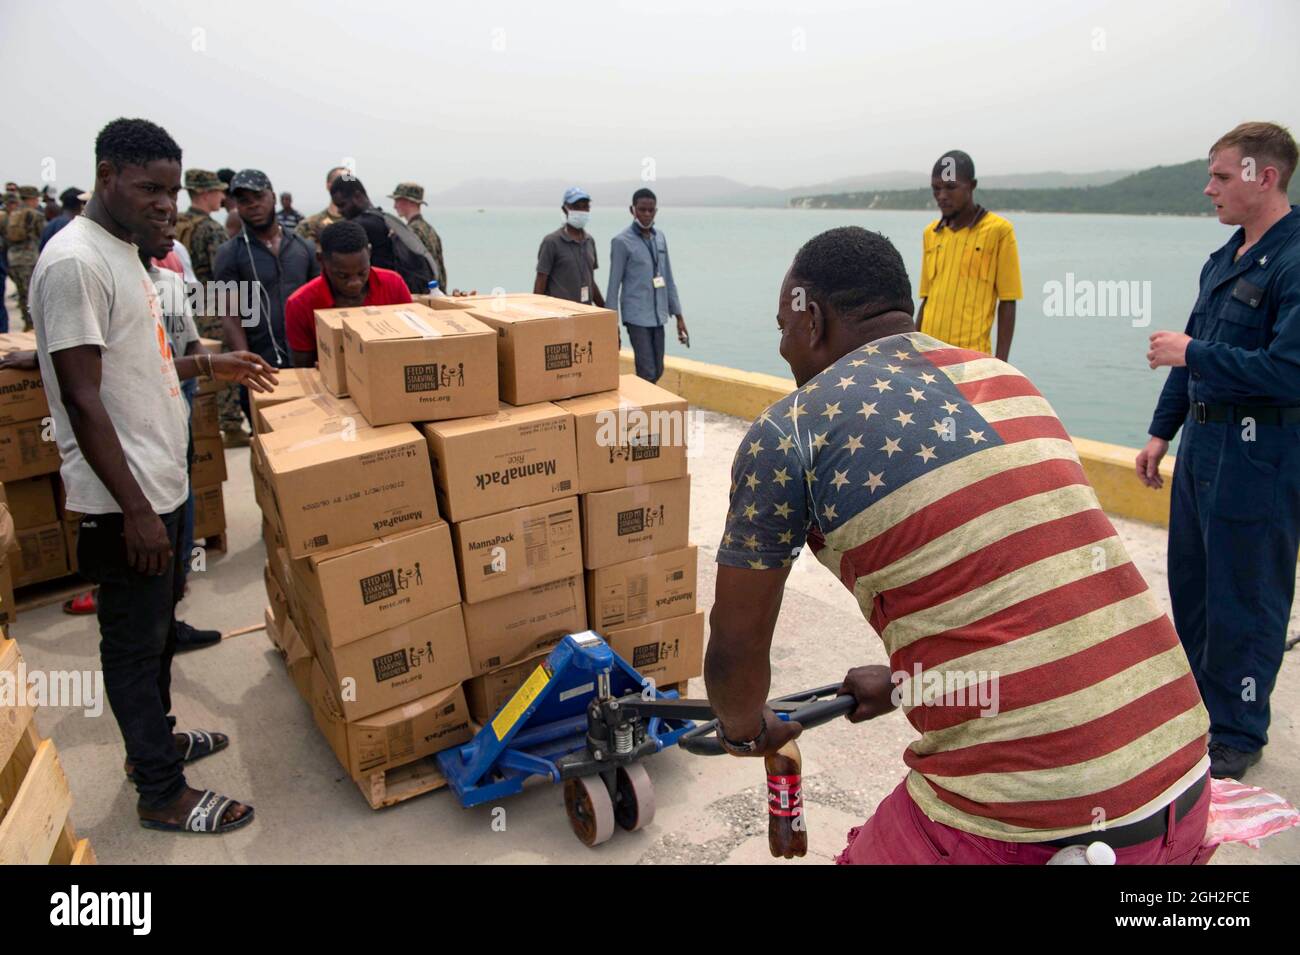 Infantes de Marina, marineros y voluntarios de los Estados Unidos descargaron alimentos de una nave de aterrizaje en el puerto de Jeremie durante una misión humanitaria el 31 de agosto de 2021 en Jeremie, Haití. El ejército, USAID y los voluntarios están ayudando en las secuelas del reciente terremoto. Foto de stock